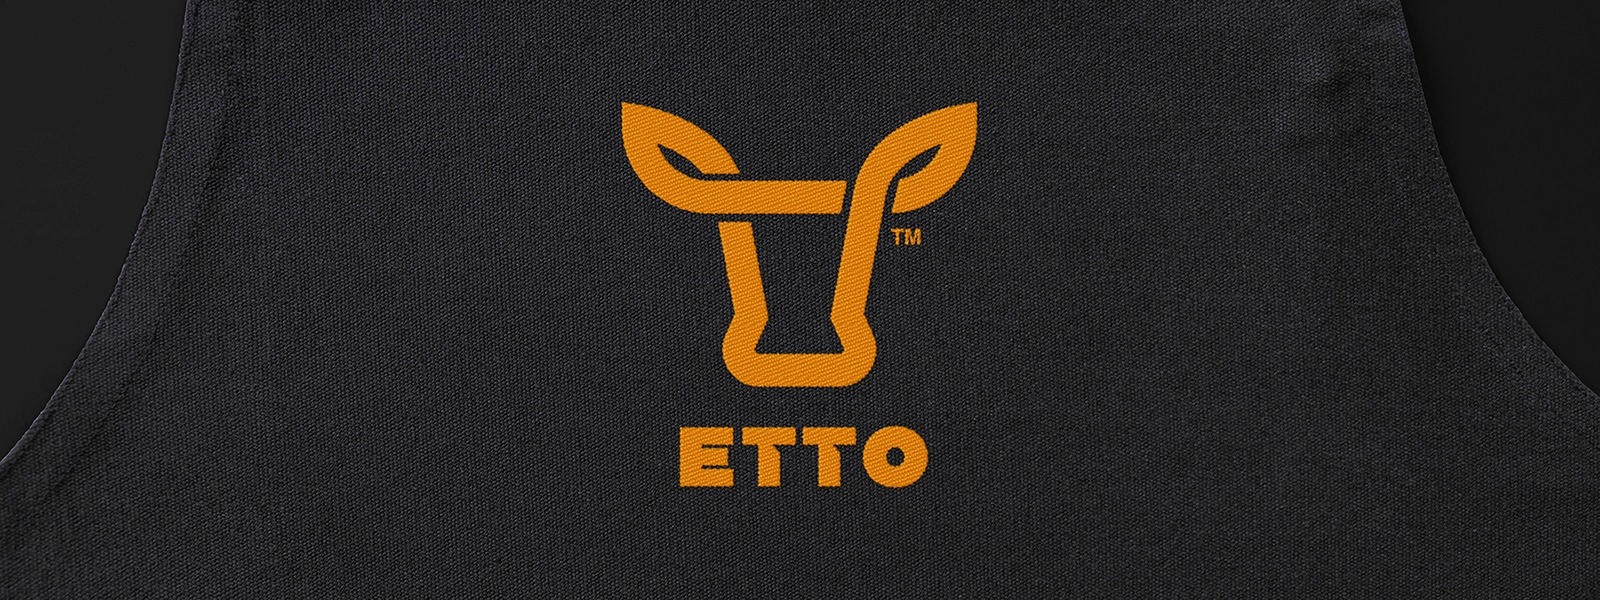 ETTO肉店品牌形象设计